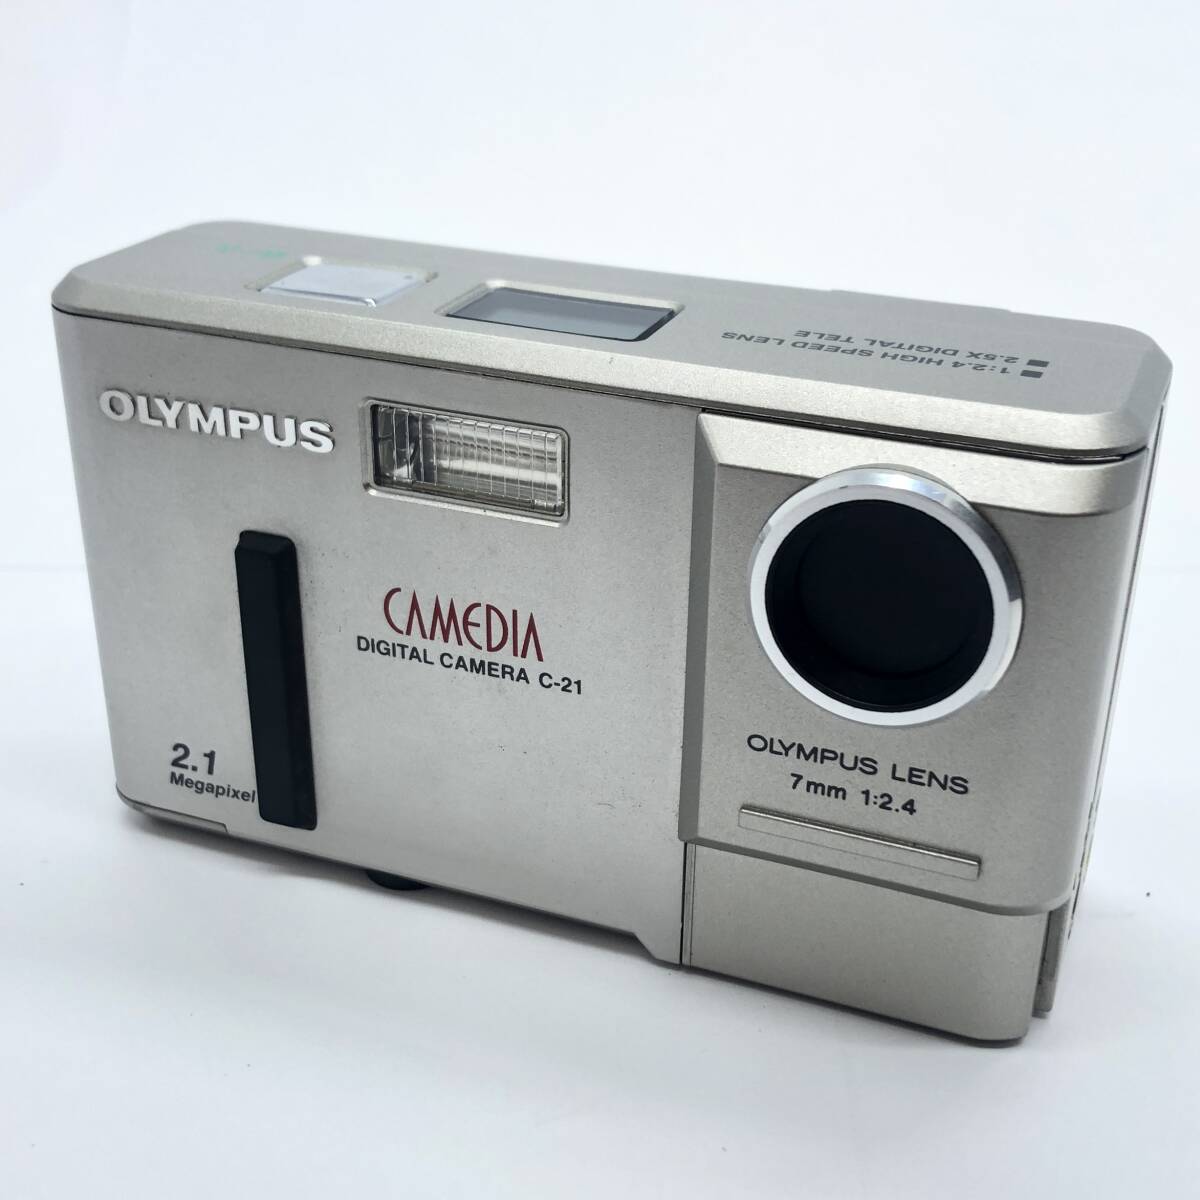 OLYMPUS オリンパス CAMEDIA カメディア DIGITAL CAMERA C-21 7mm 1:2.4 2.1 Megapixel コンパクト フイルムカメラ カメラ 現状品_画像3